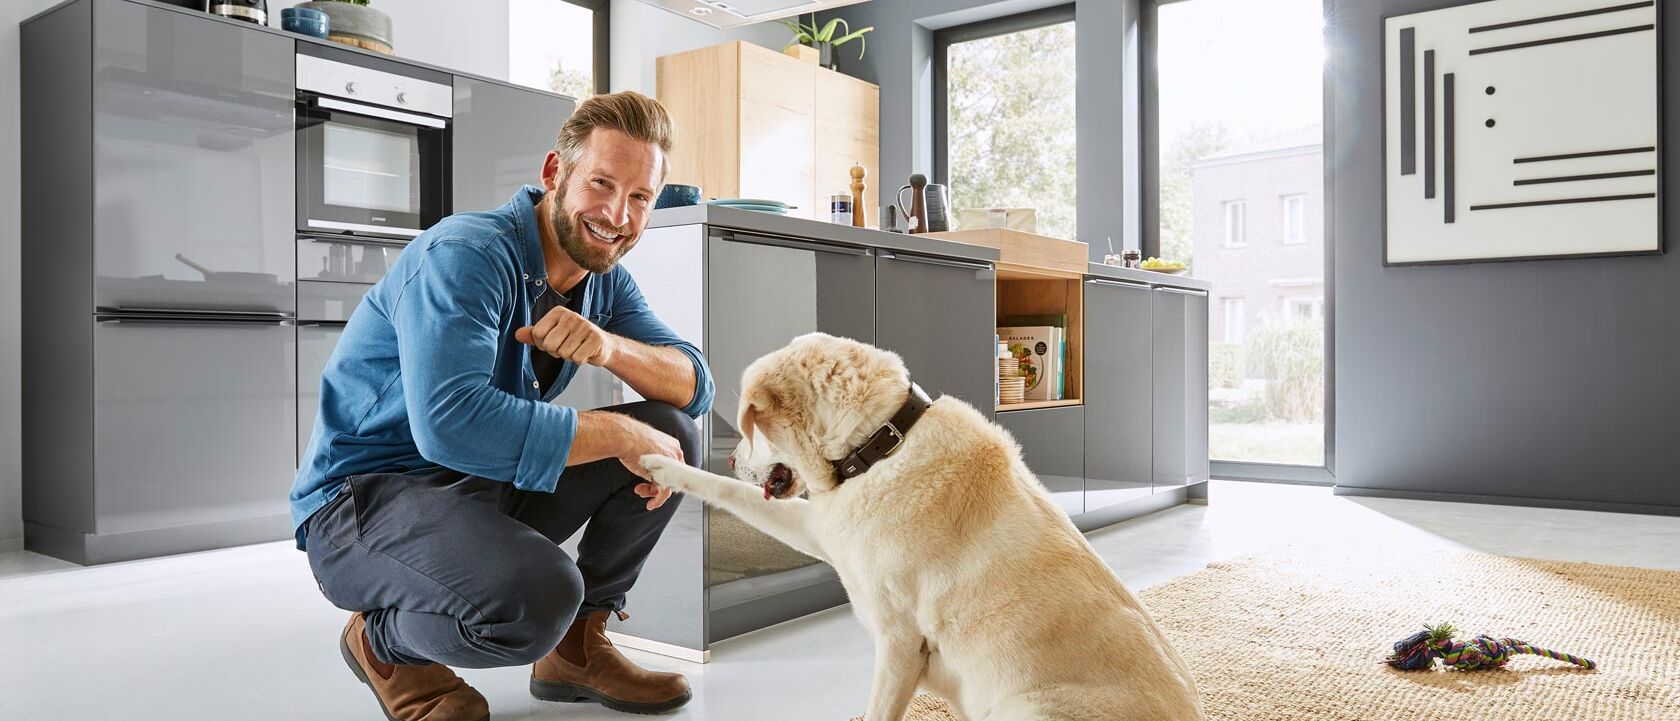 Mann mit Hund in Küche